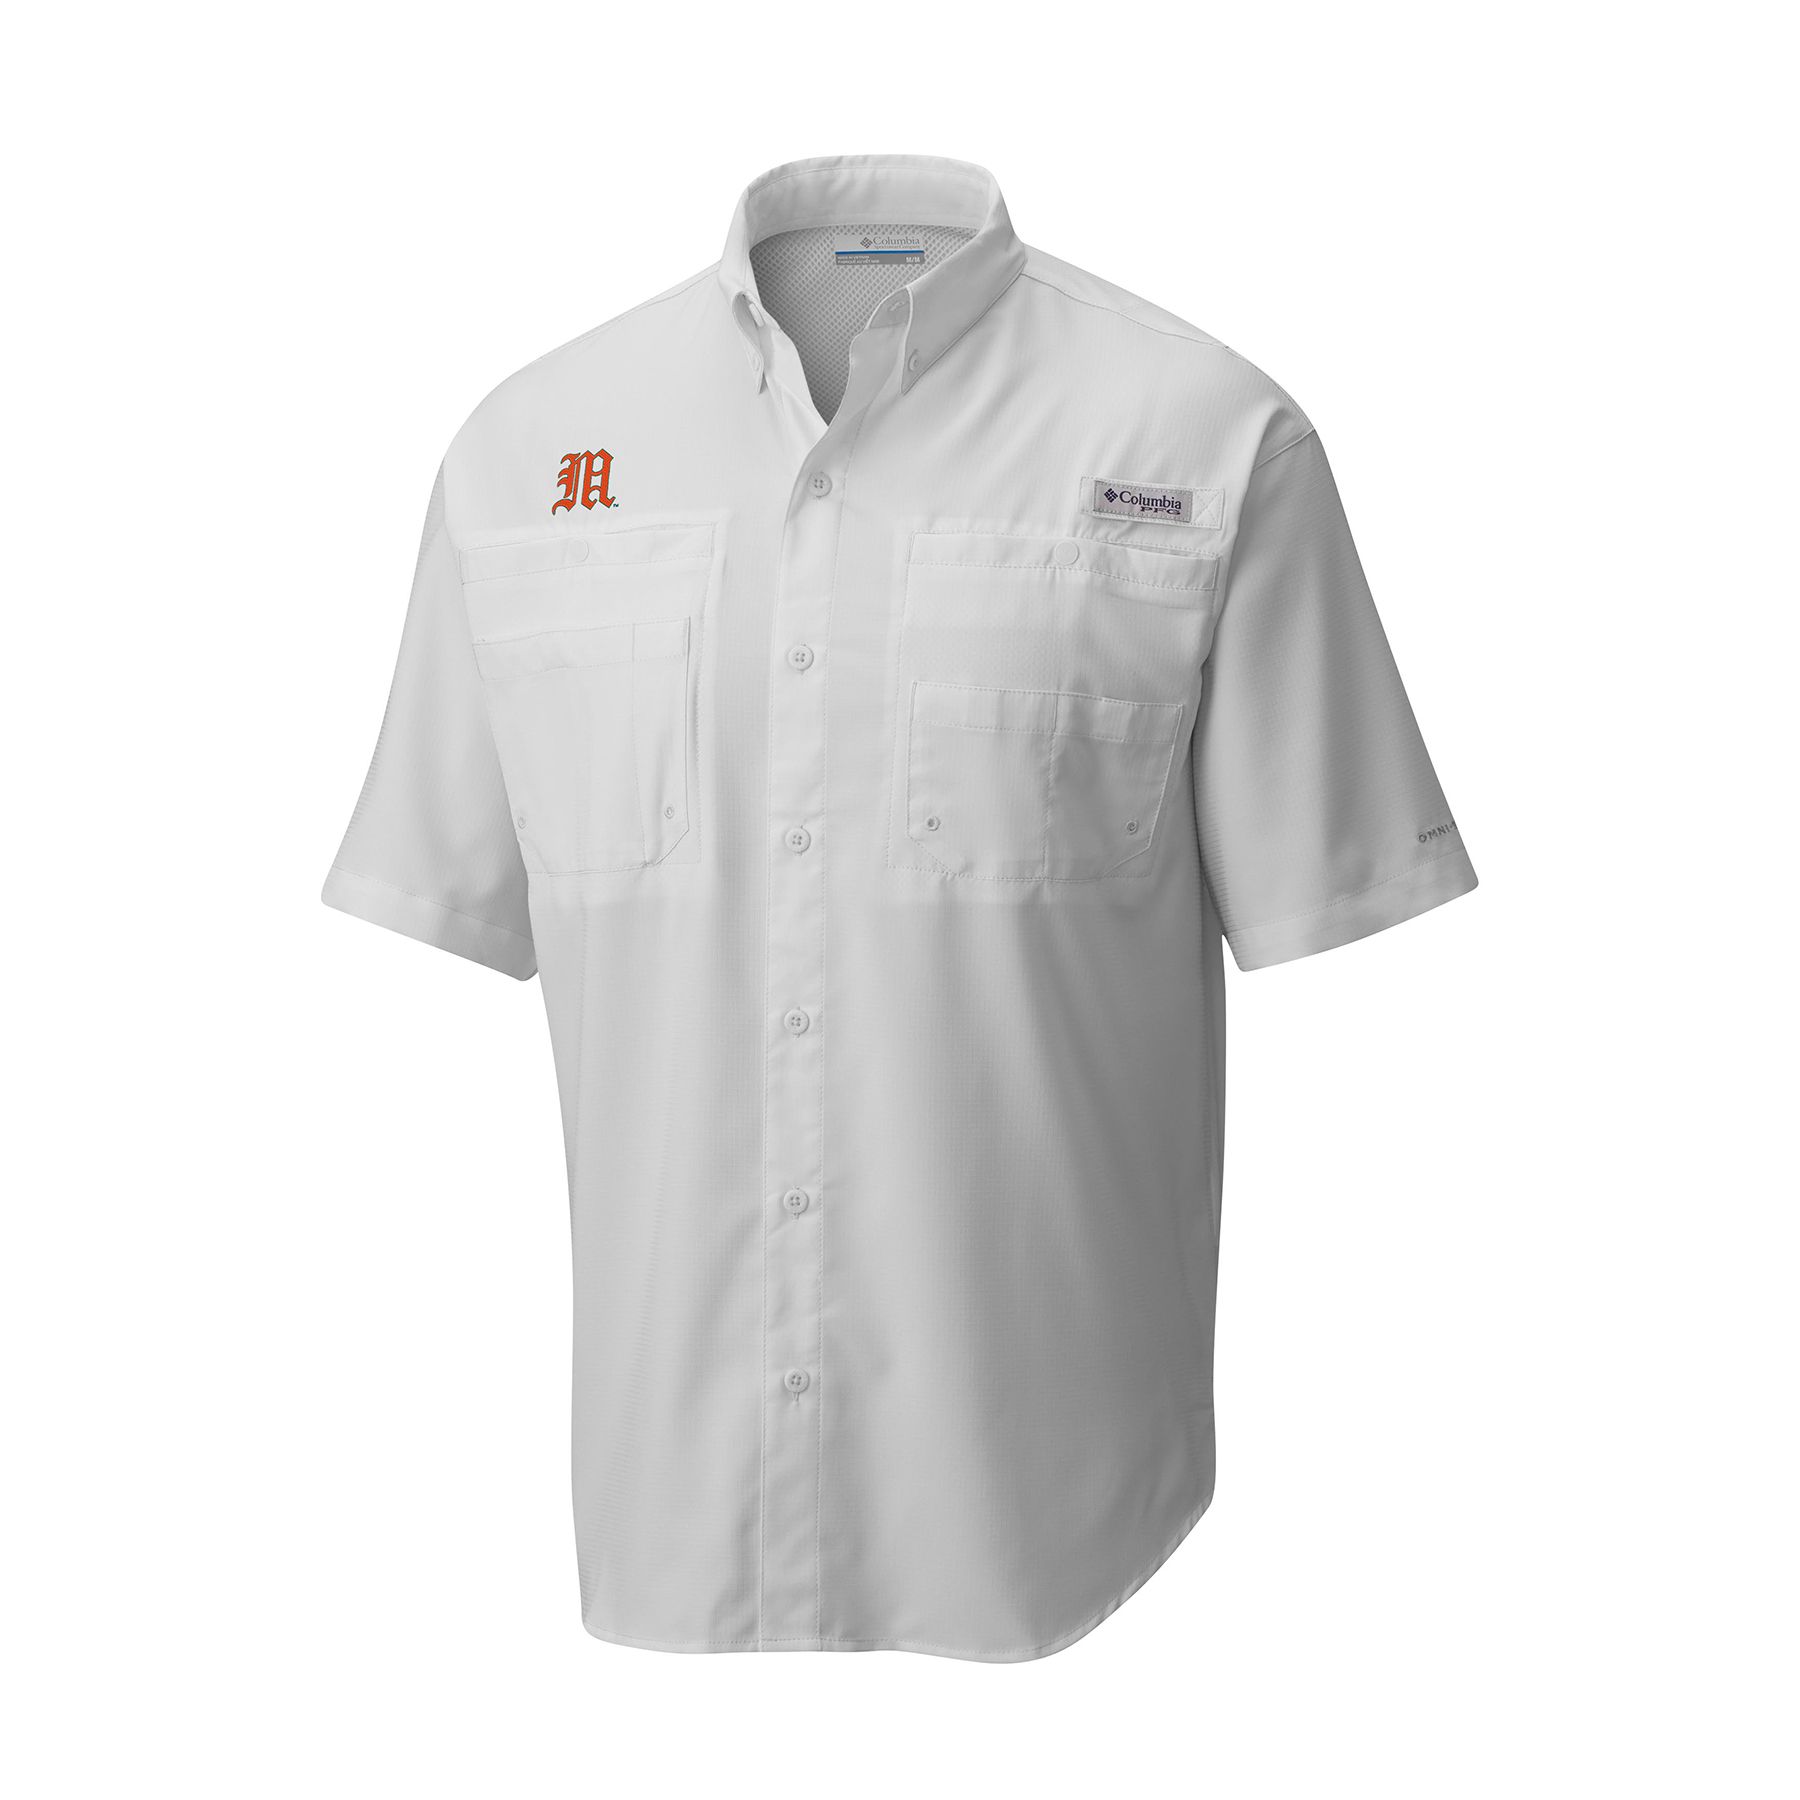 Columbia Miami Hurricane Baseball Tamiami Button Up White Woven Shirt